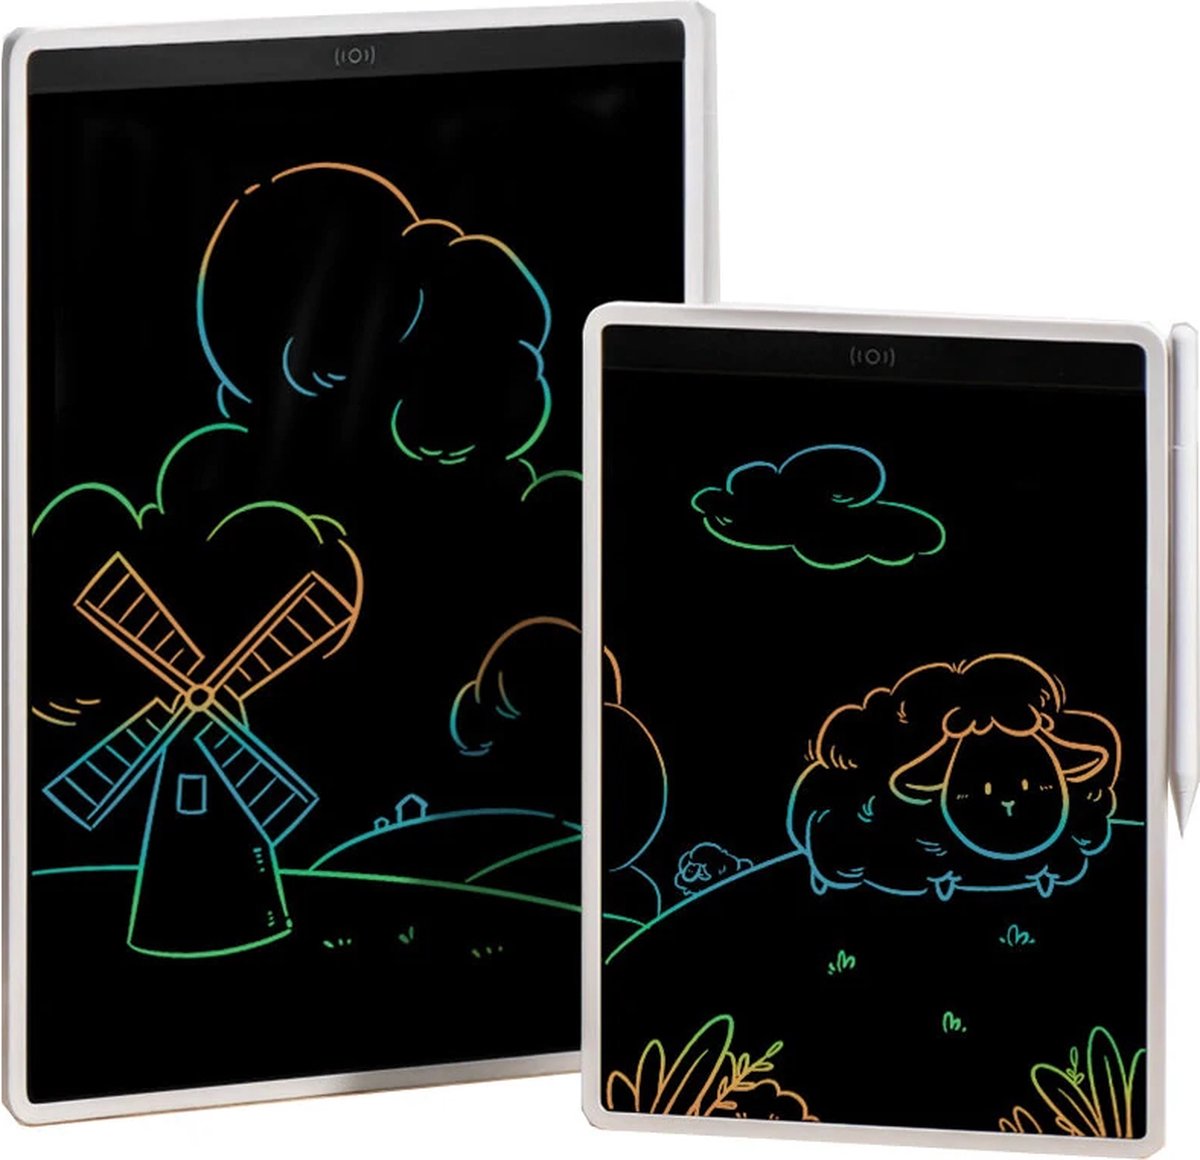 13.5 inch LCD Tekentablet- Schrijftablet - Kleuren versie